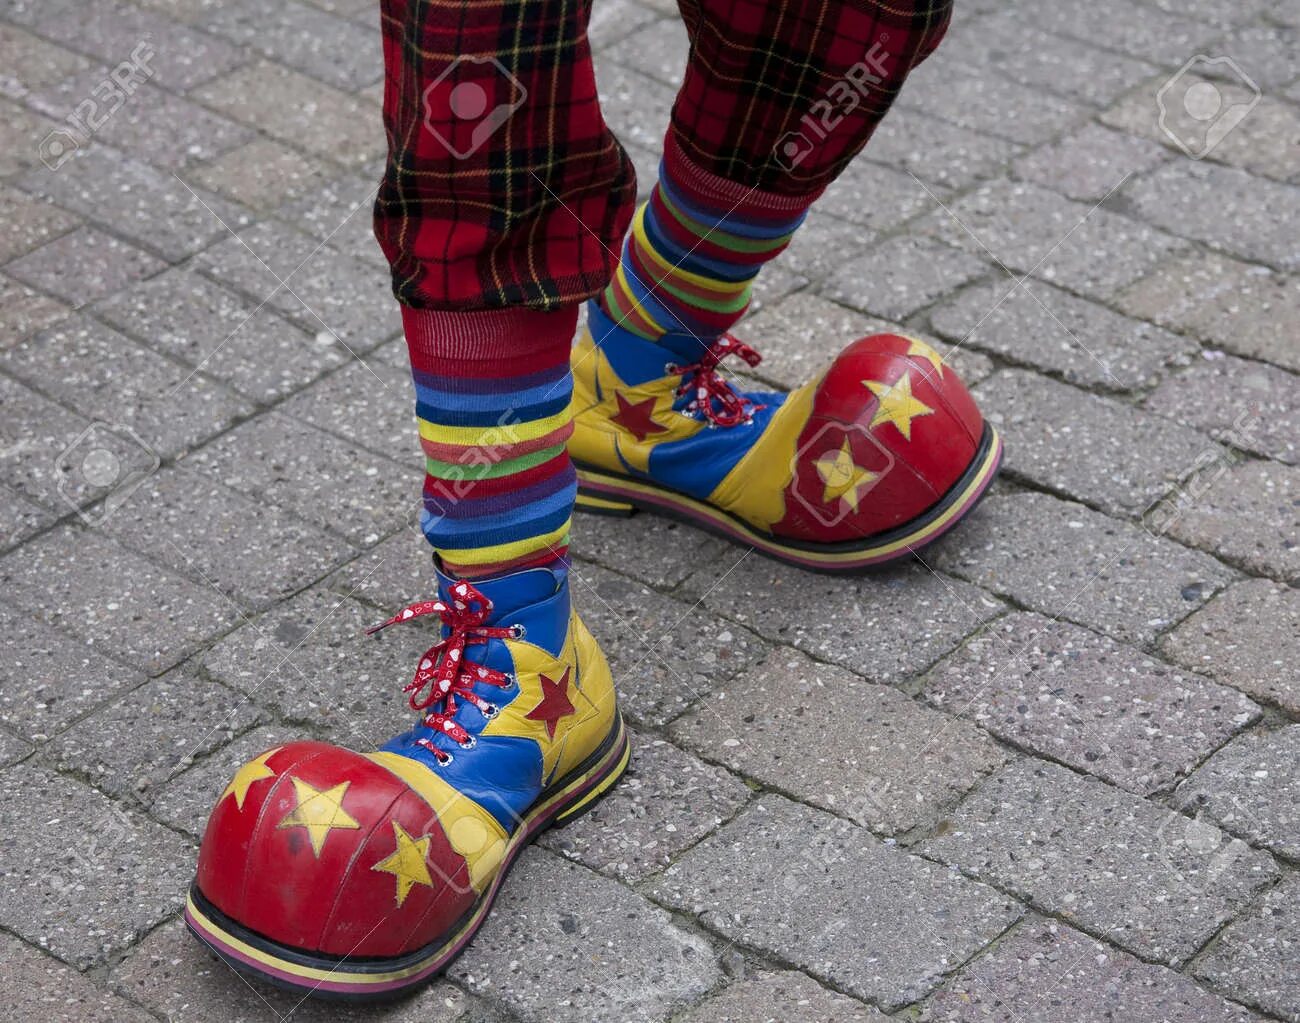 Нога клоуна. Клоунские ботинки. Башмаки клоуна. Клоун в больших ботинках. Ноги клоуна.